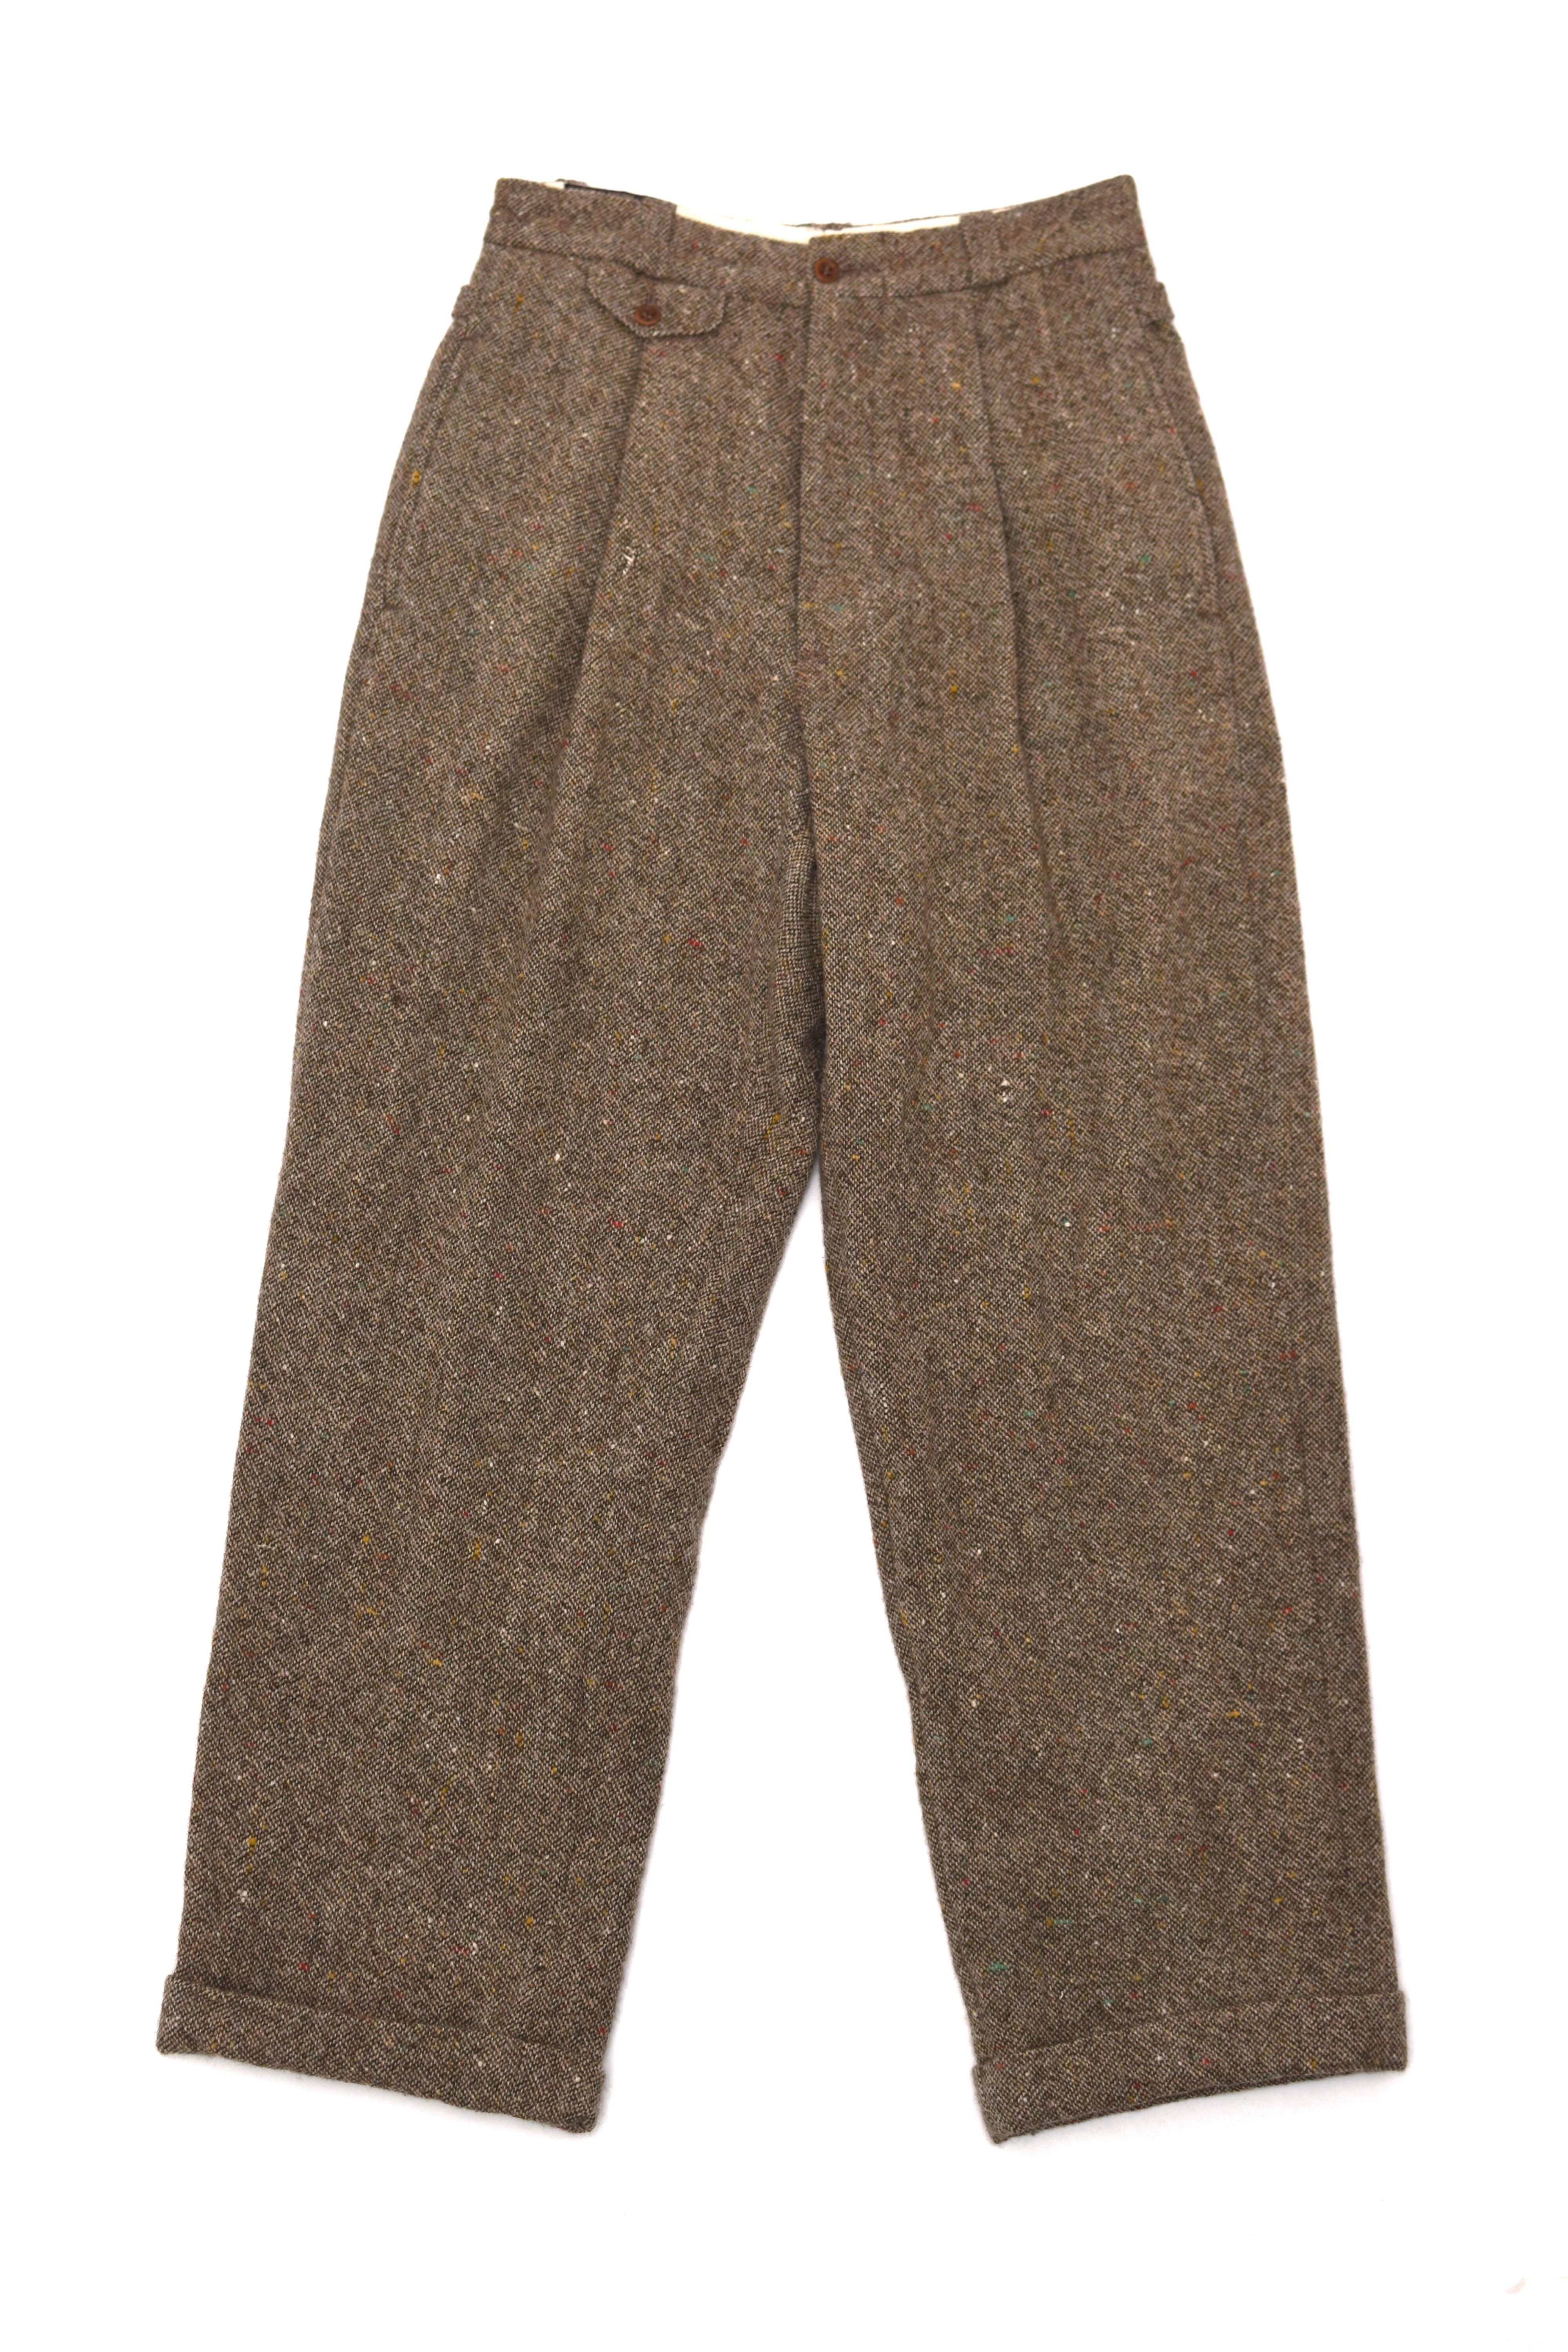 RRL tweed slacks pants Made in Canada